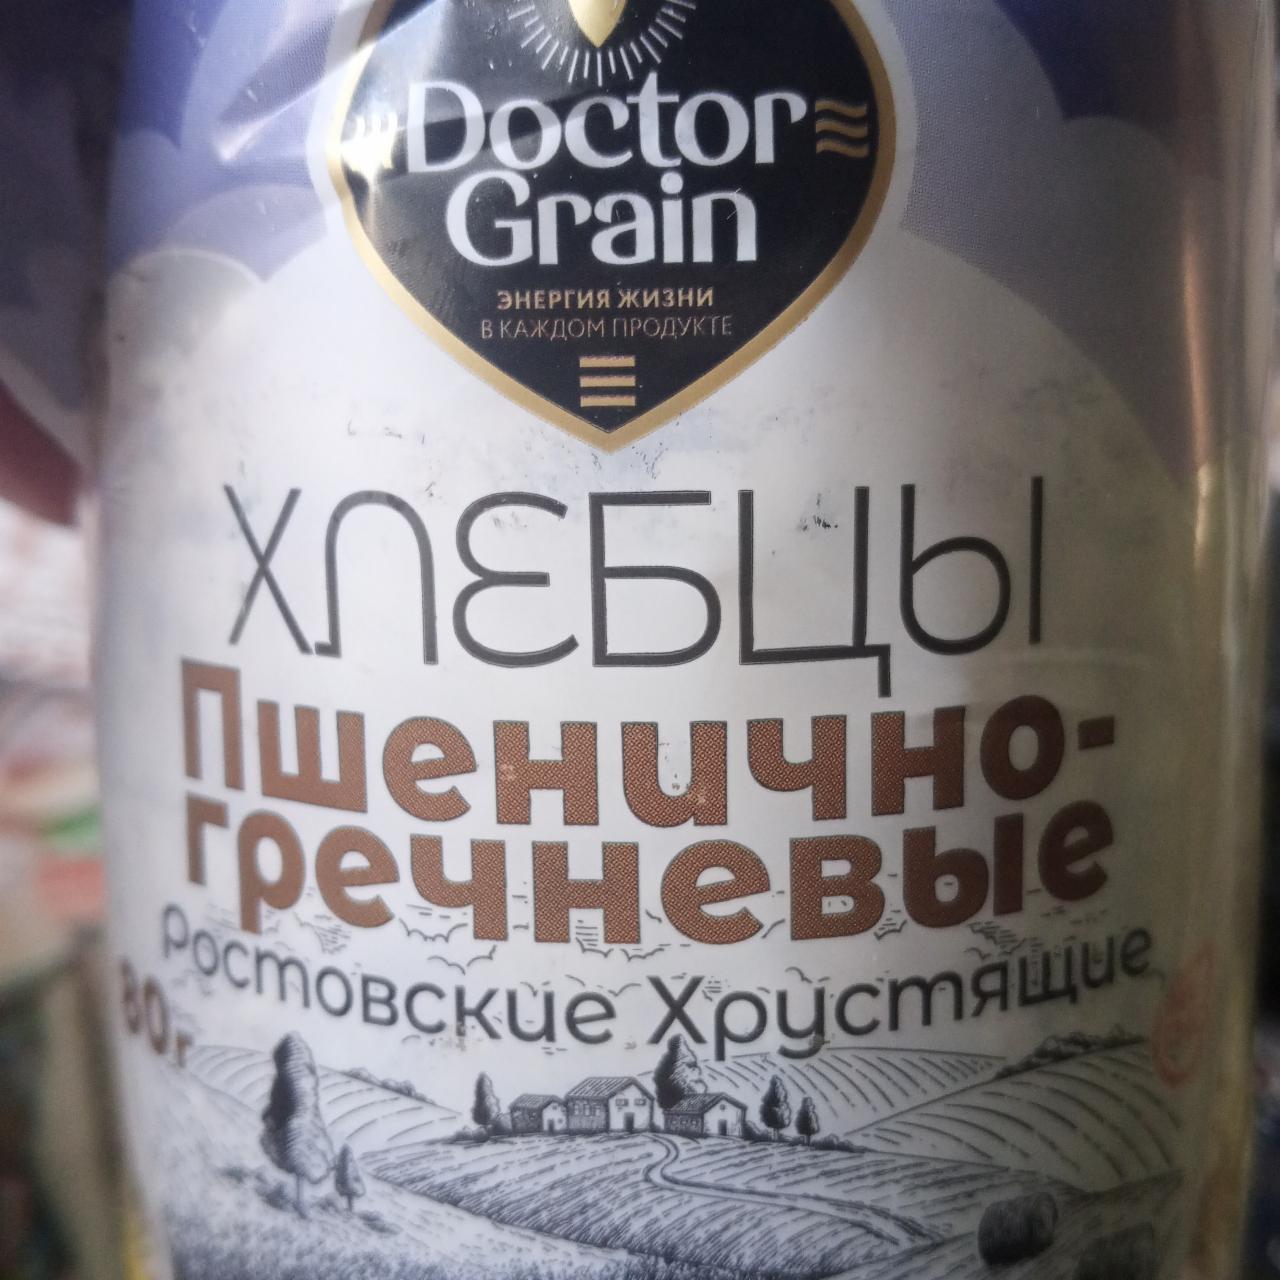 Фото - Хлебцы пшенично-гречневые ростовские хрустящие Doctor Grain